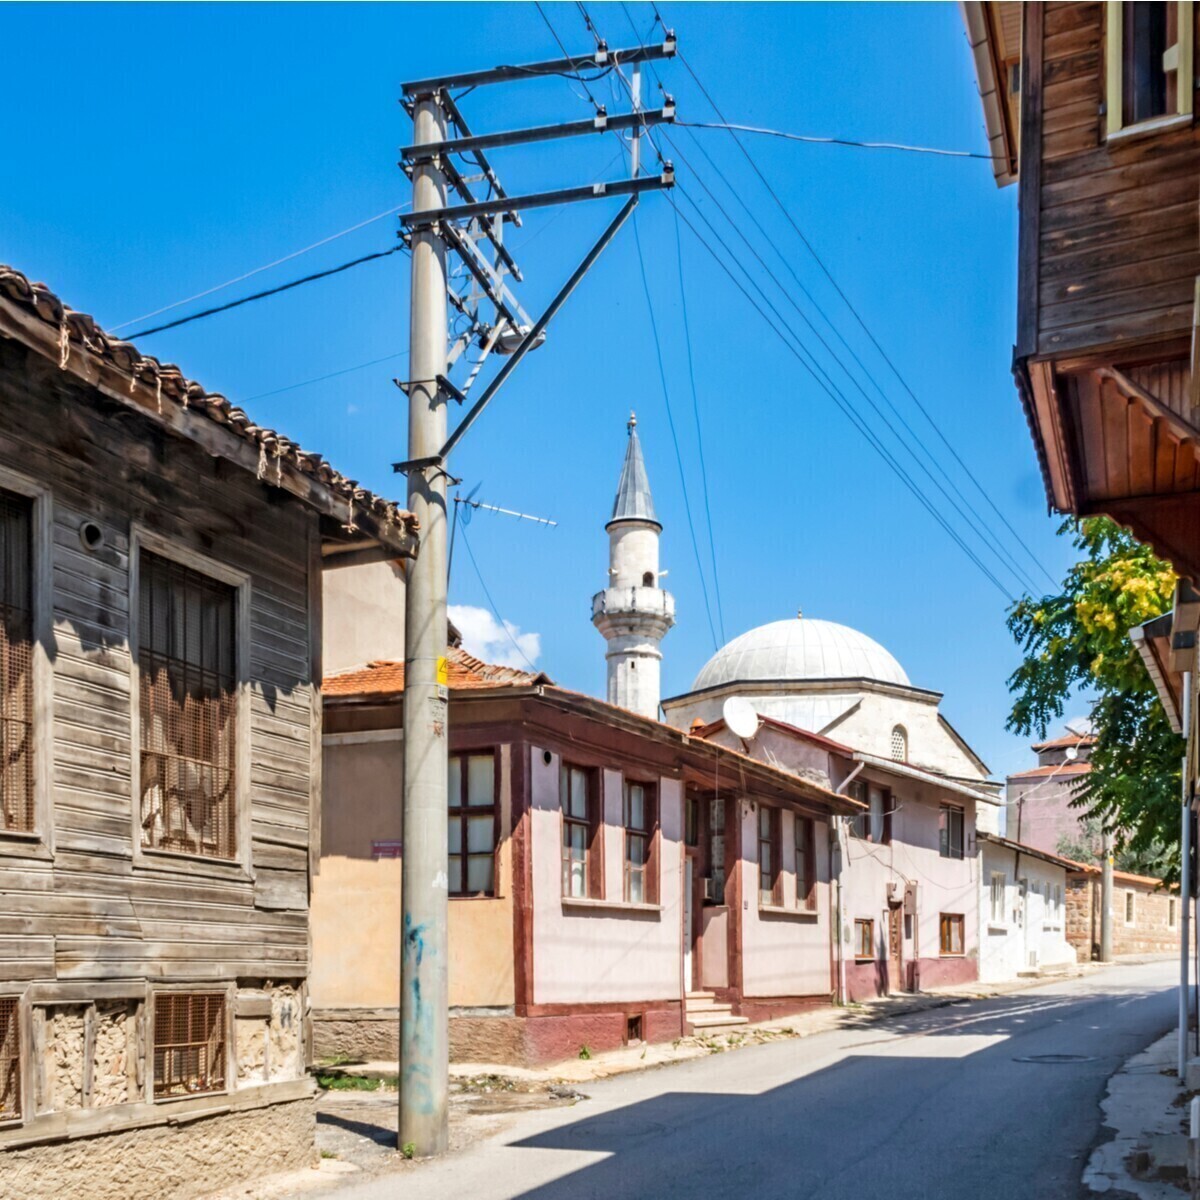 1 Gece Konaklamalı Kakava Şenlikleri Edirne Camii Ve Müzeler Turu